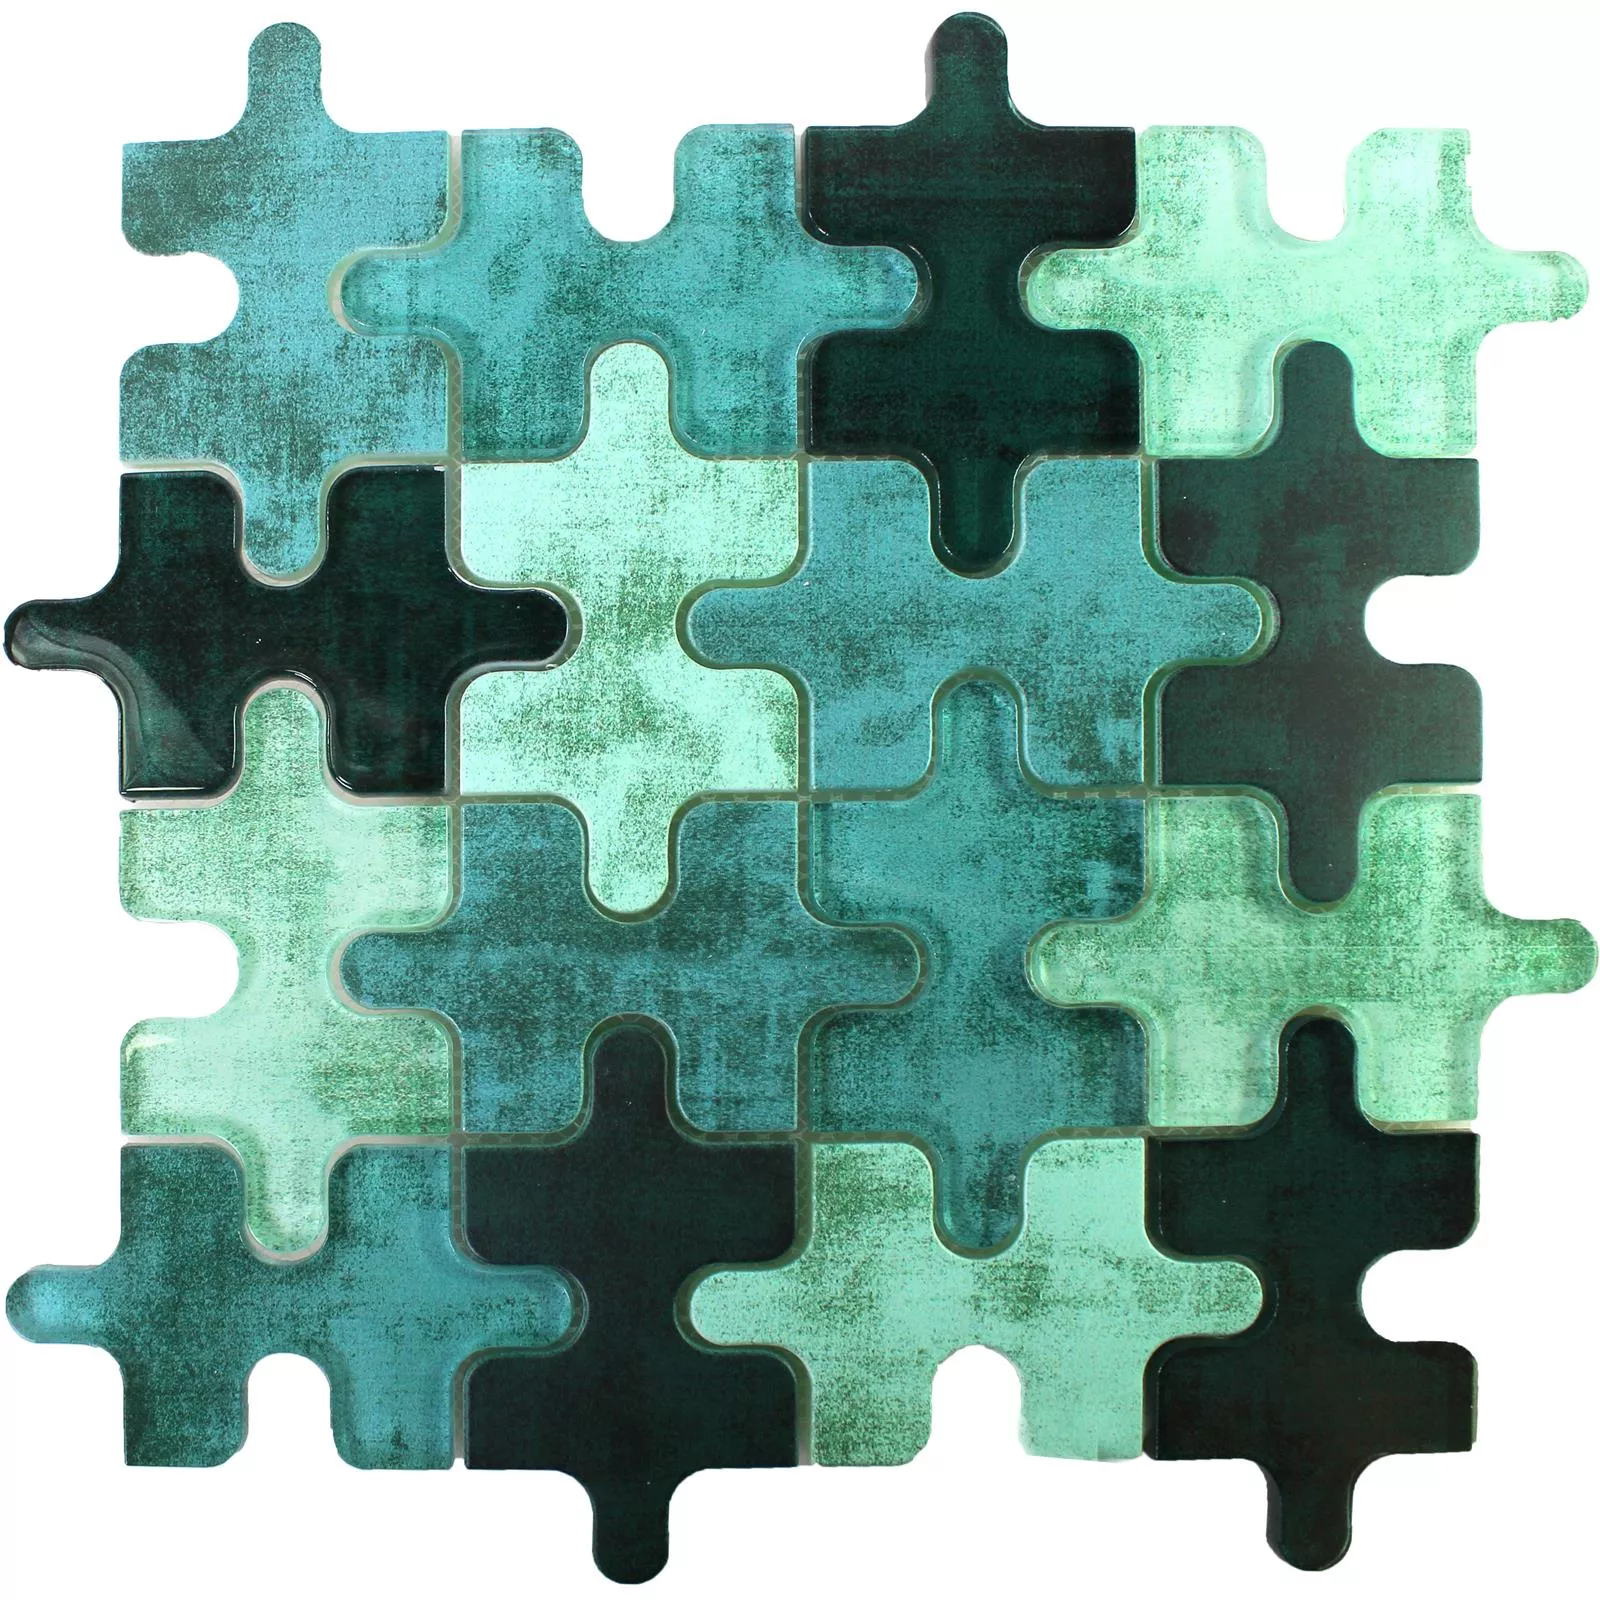 Muster von Glasmosaik Fliesen Puzzle Grün